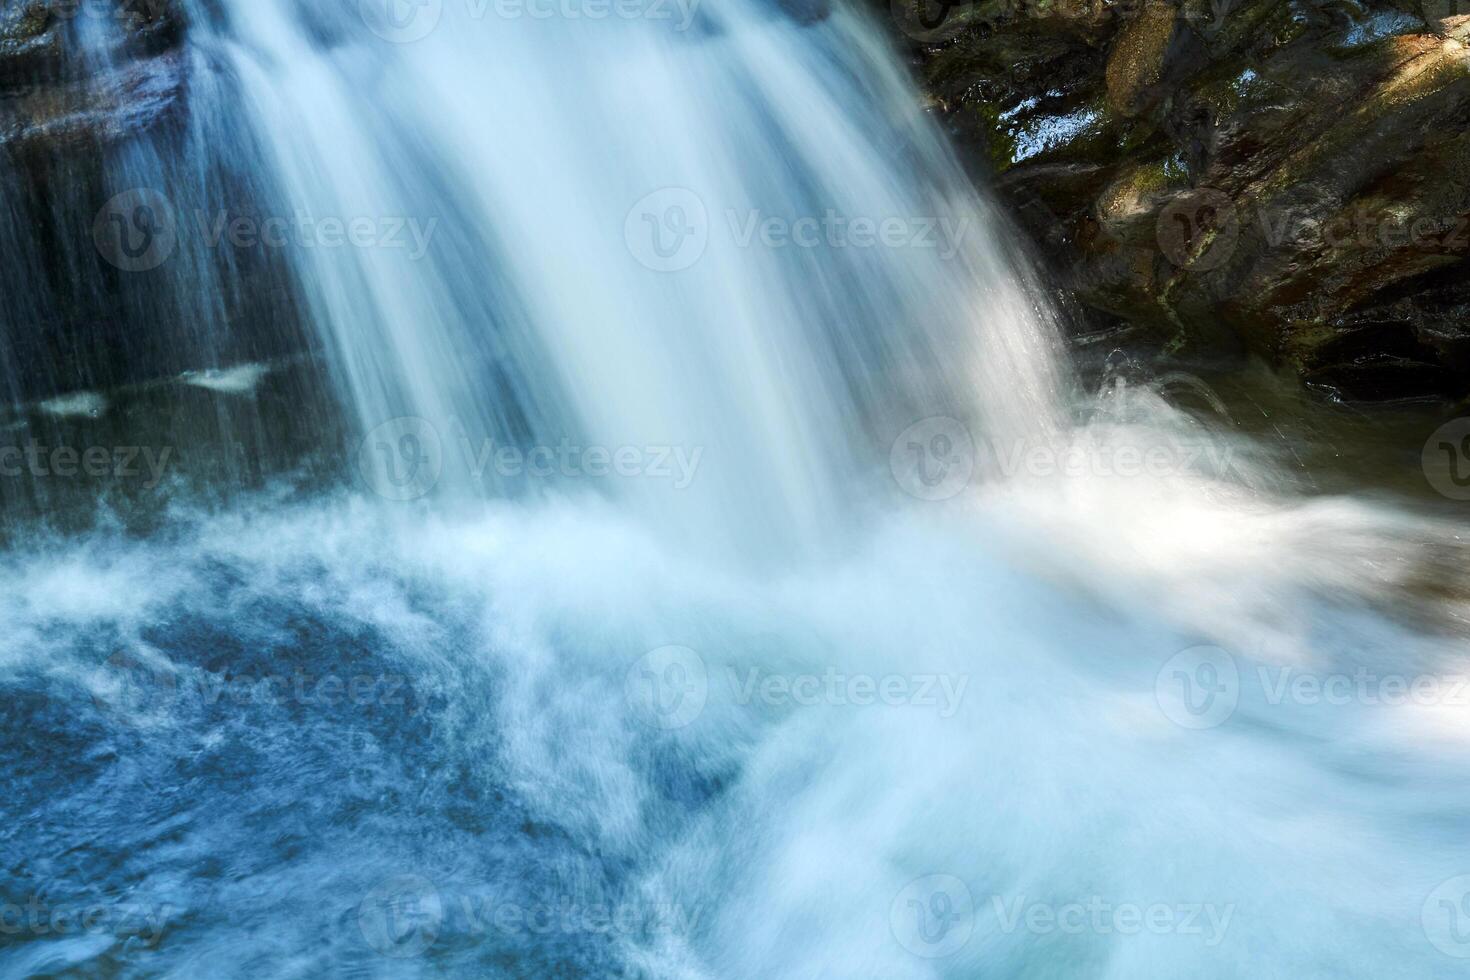 klein waterval in een berg stroom tussen rotsen, de water is wazig in beweging foto